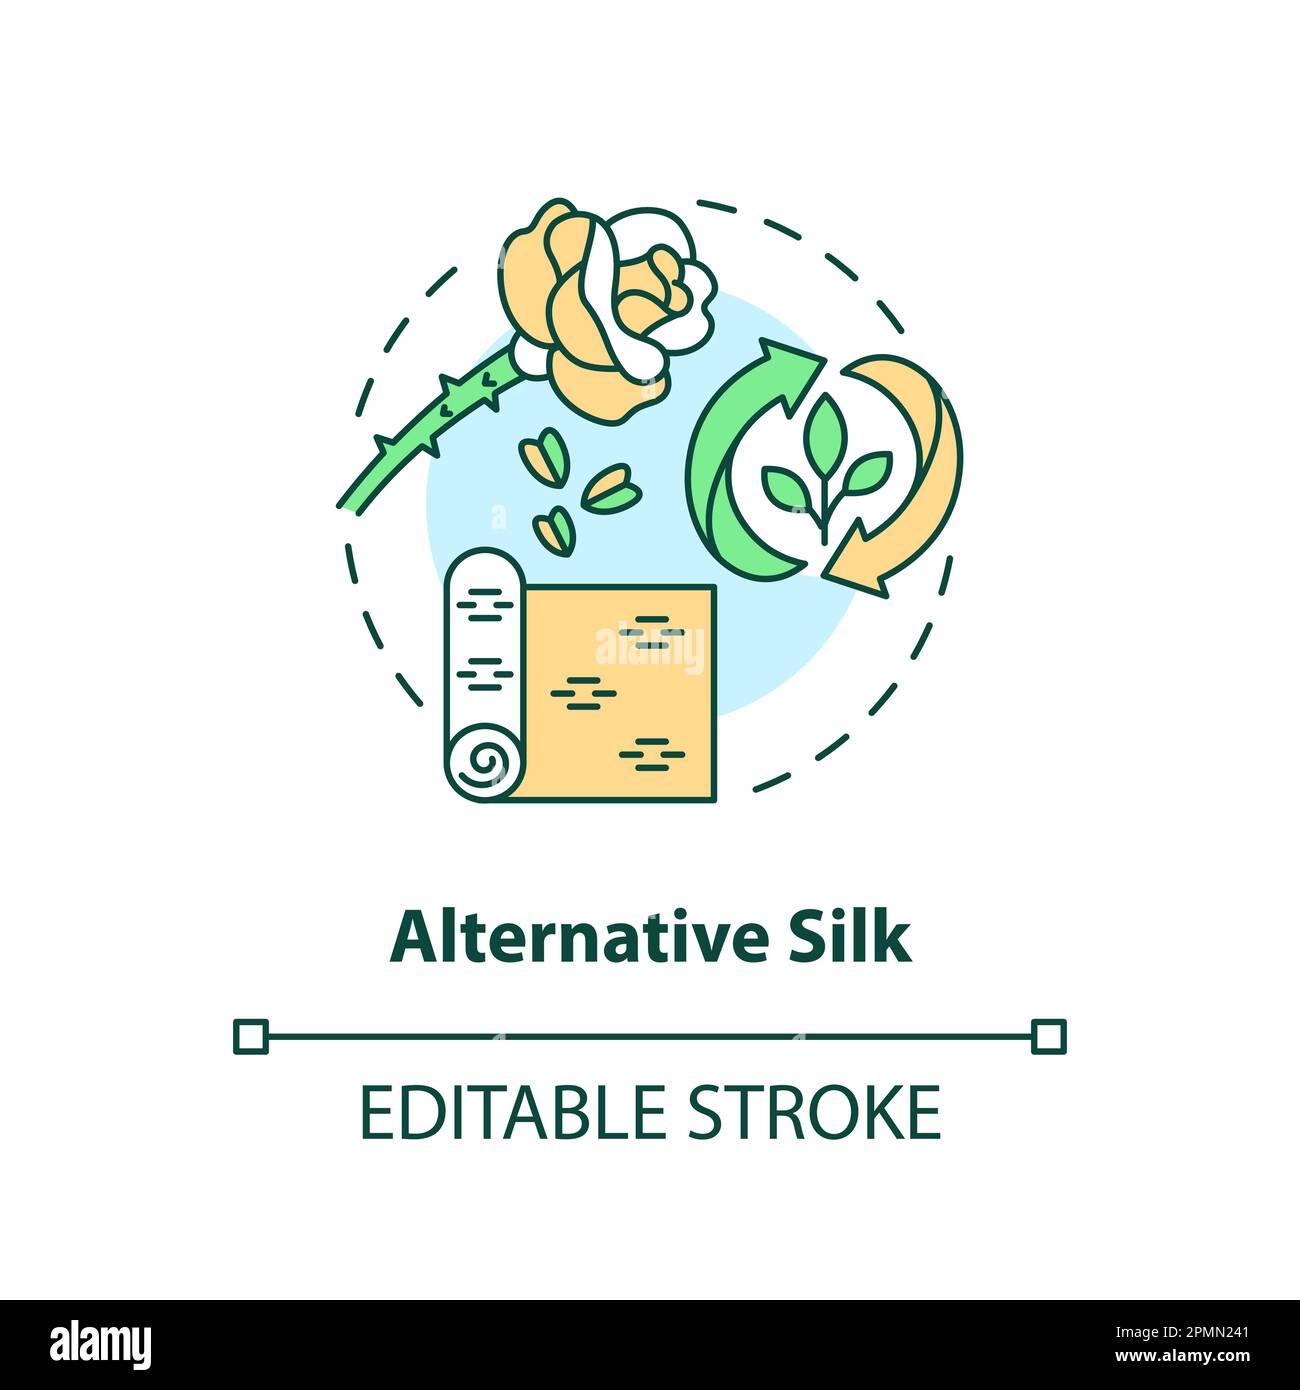 Alternative silk concept icon Stock Vector